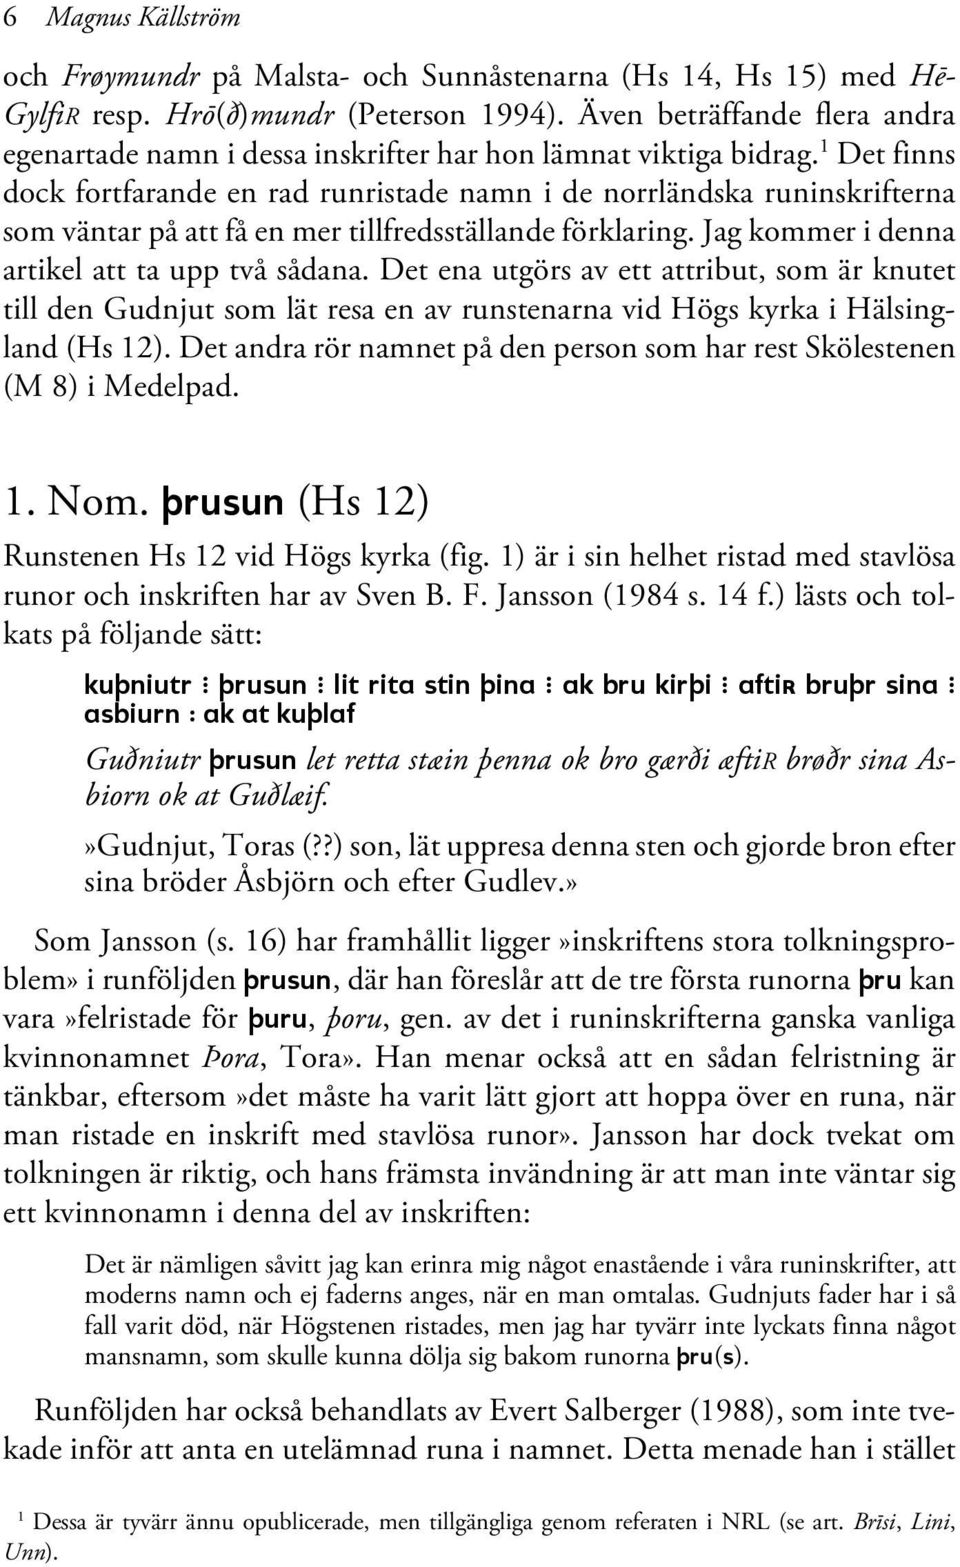 1 Det finns dock fortfarande en rad runristade namn i de norrländska runinskrifterna som väntar på att få en mer tillfredsställande förklaring. Jag kommer i denna artikel att ta upp två sådana.